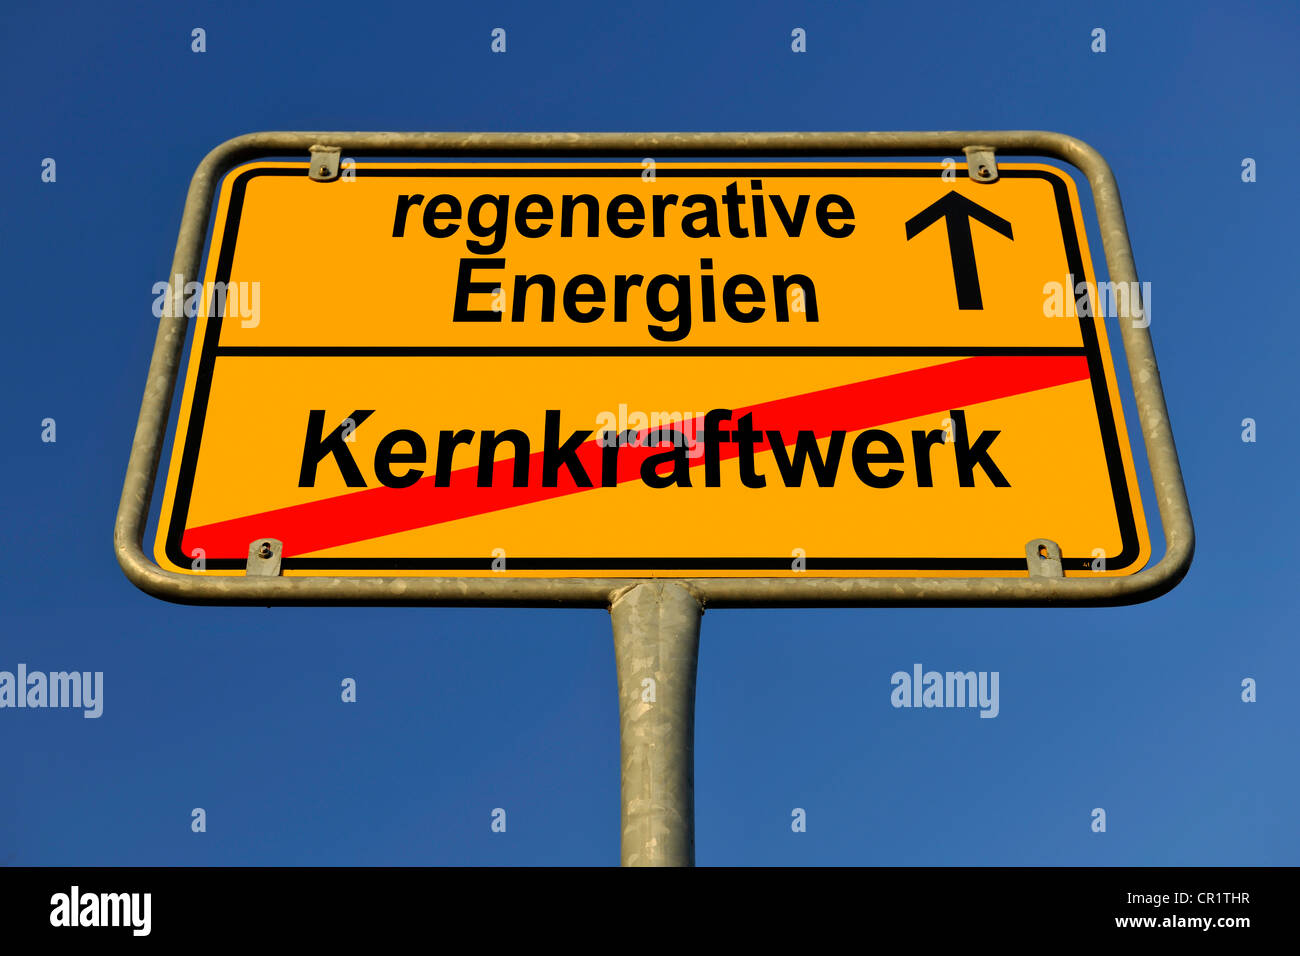 Los límites de la ciudad firmar con las palabras Energien regenerativa y Kernkraftwerk, Alemán para la energía renovable y la estación de energía nuclear, Foto de stock